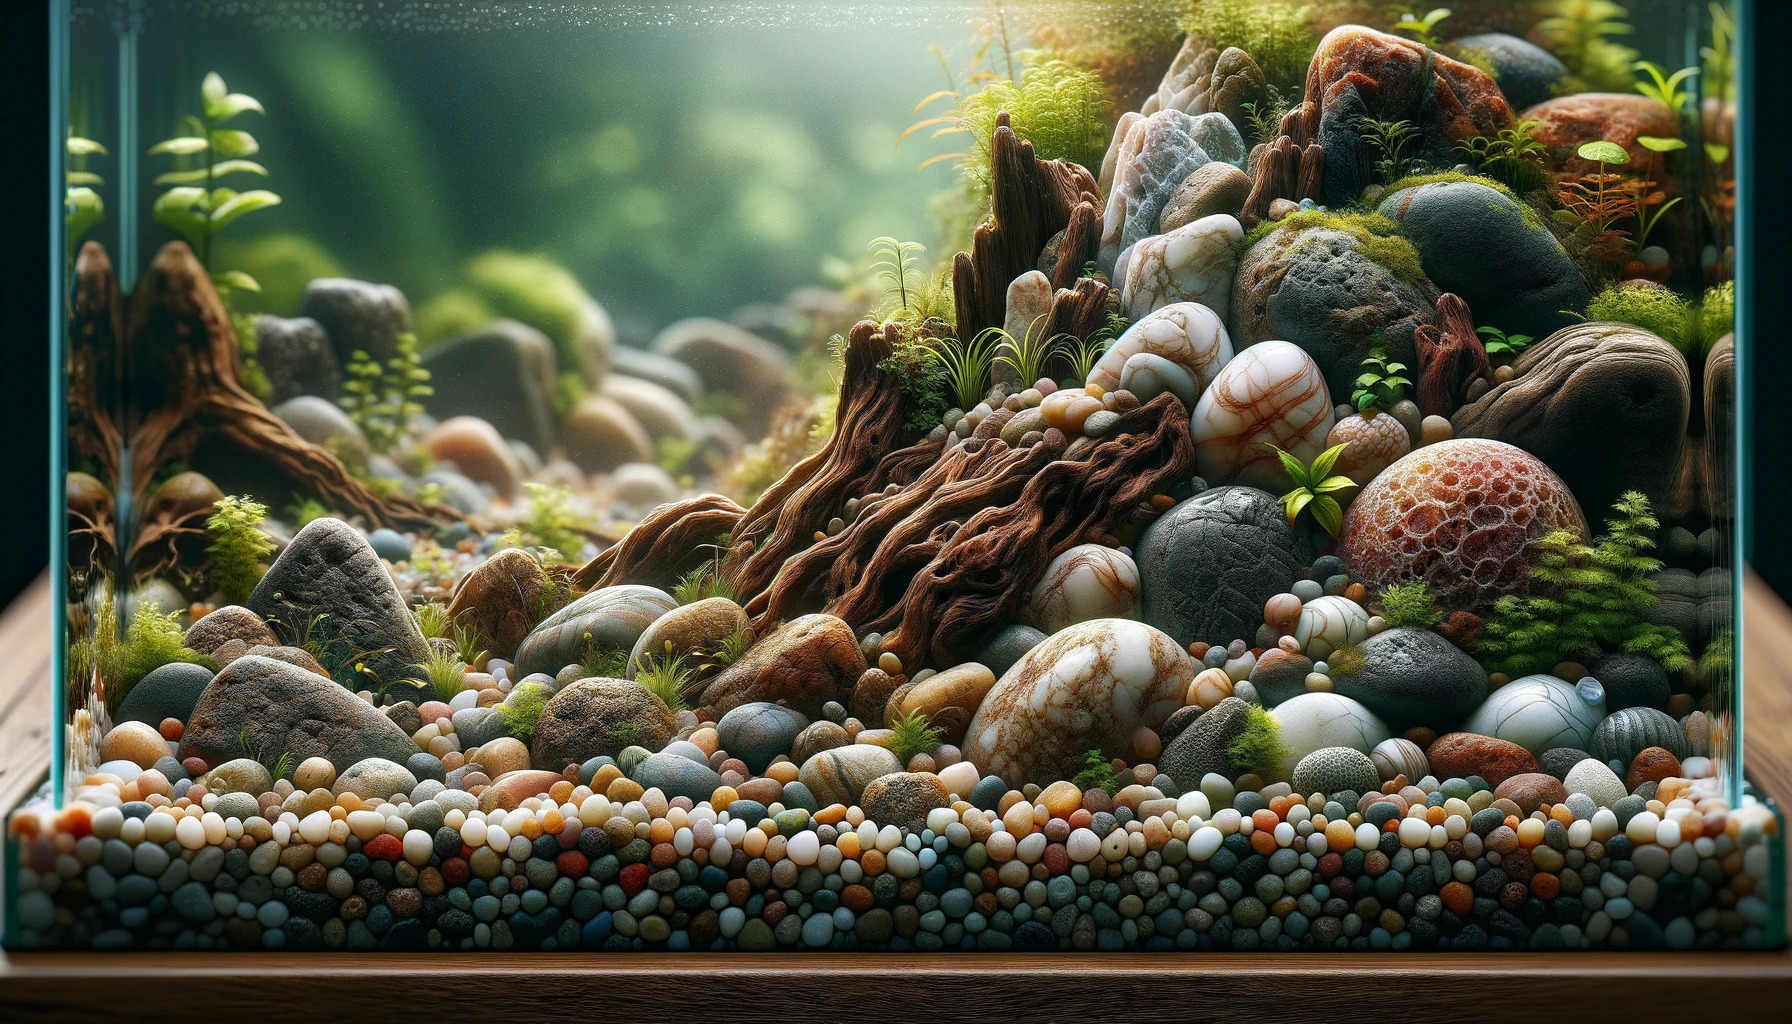 Ausschnitt eines Aquariums mit vielen Steinen, künstlerisch